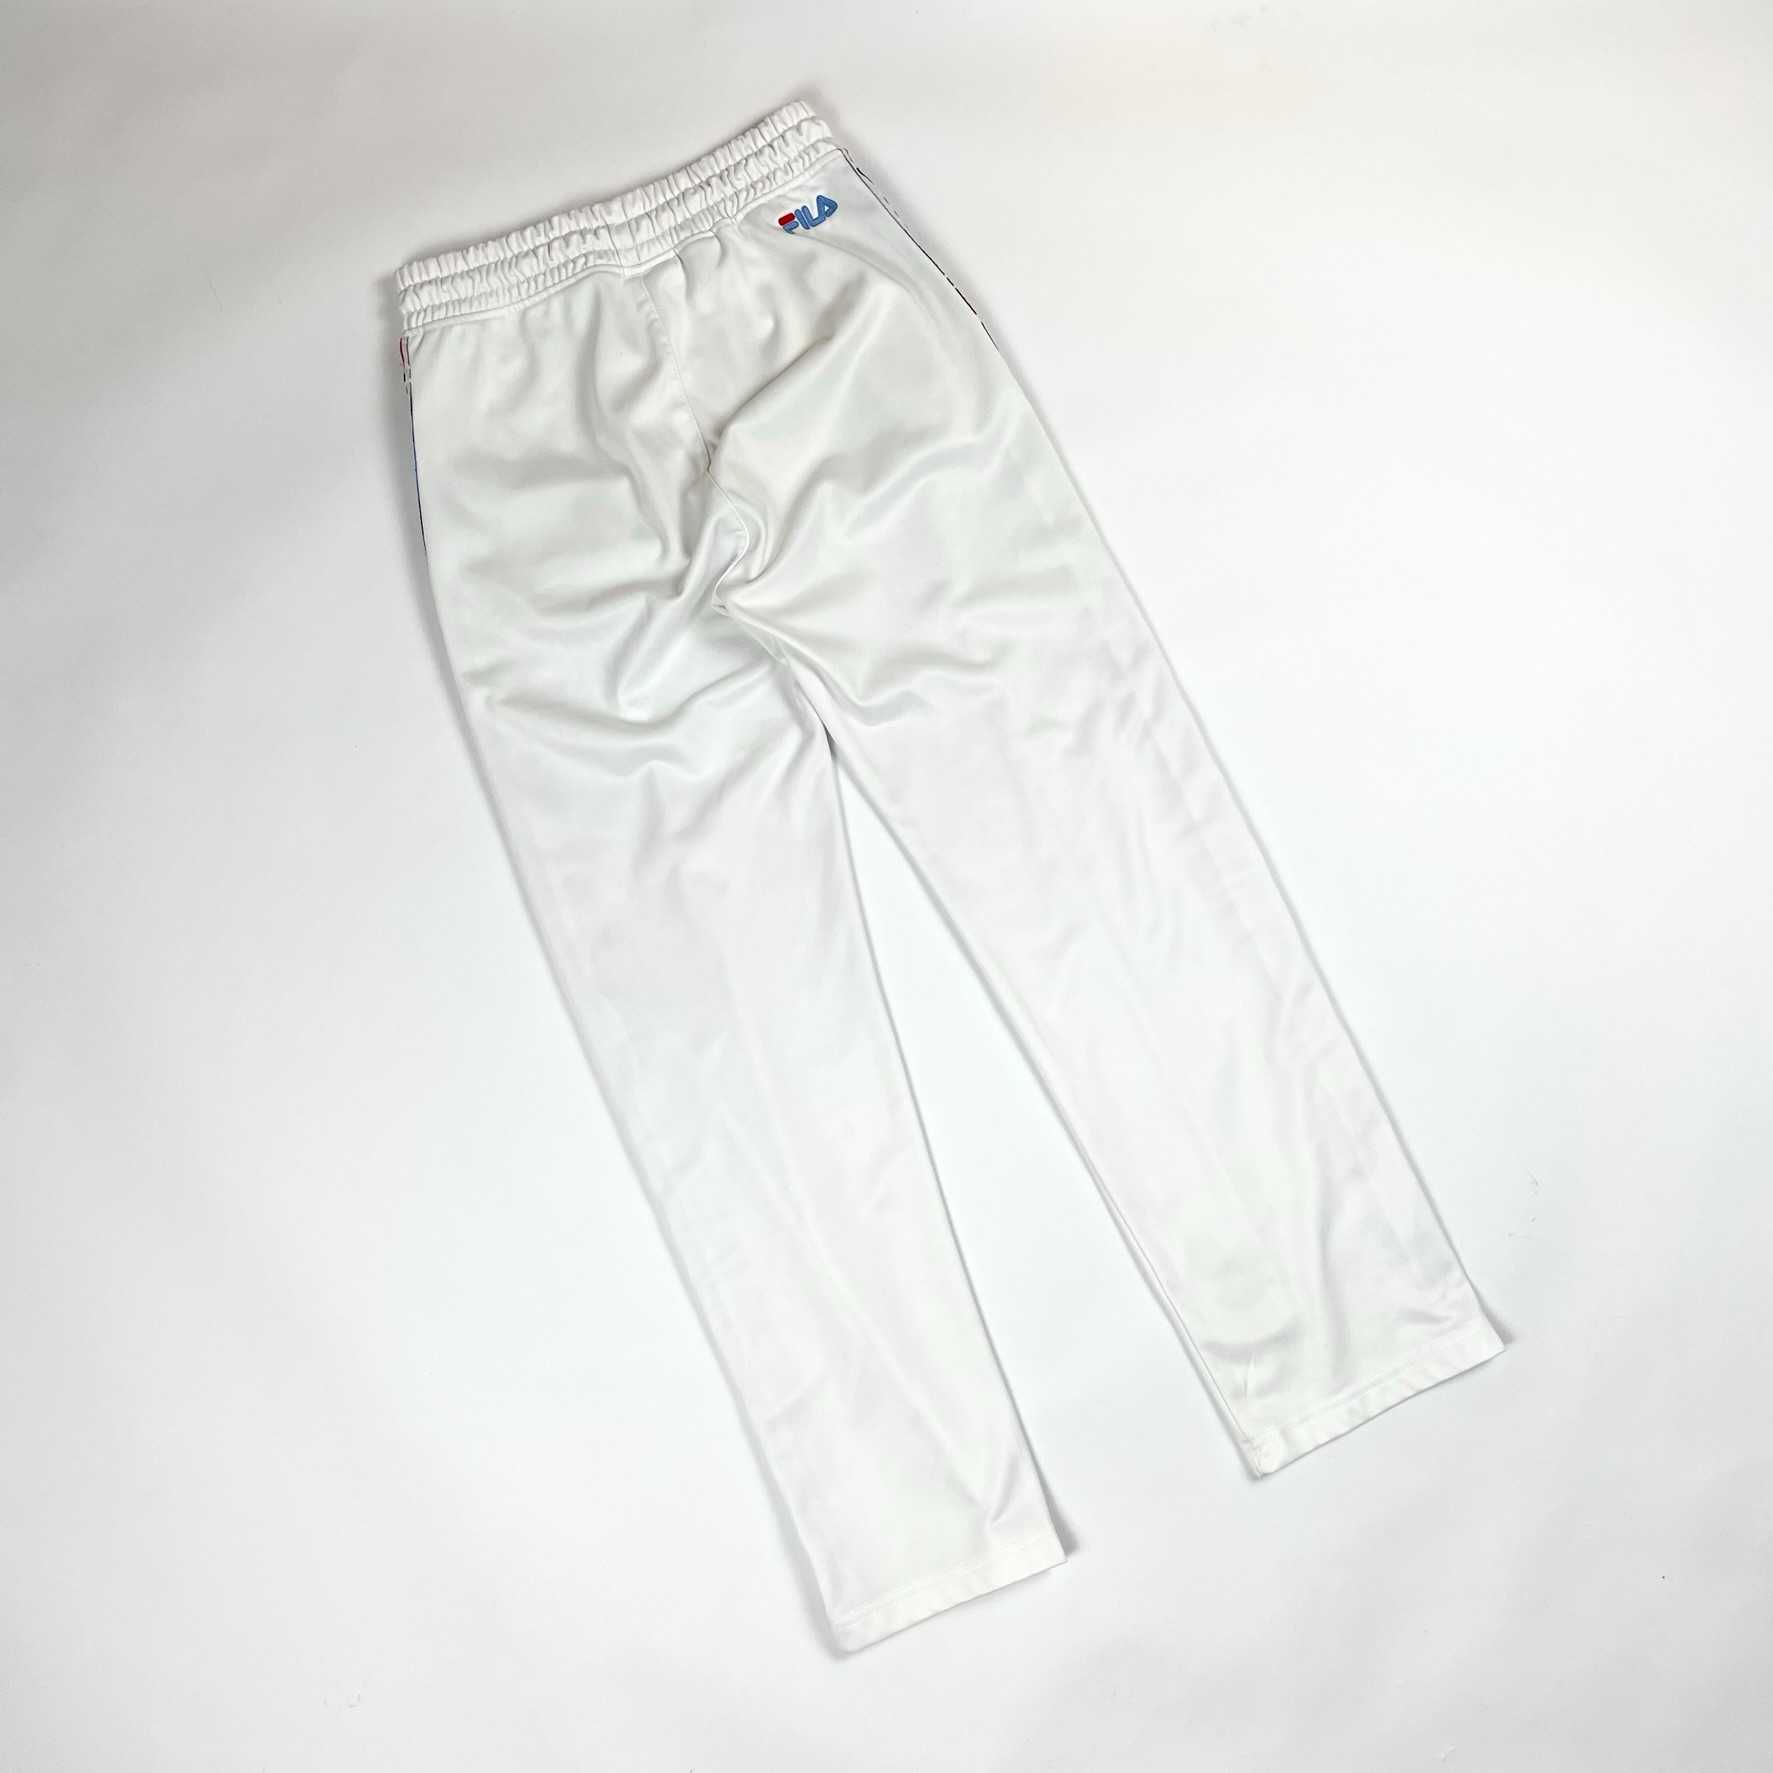 Fila sweatpants vintage spodnie dresowe retro sportowe domowe 90s